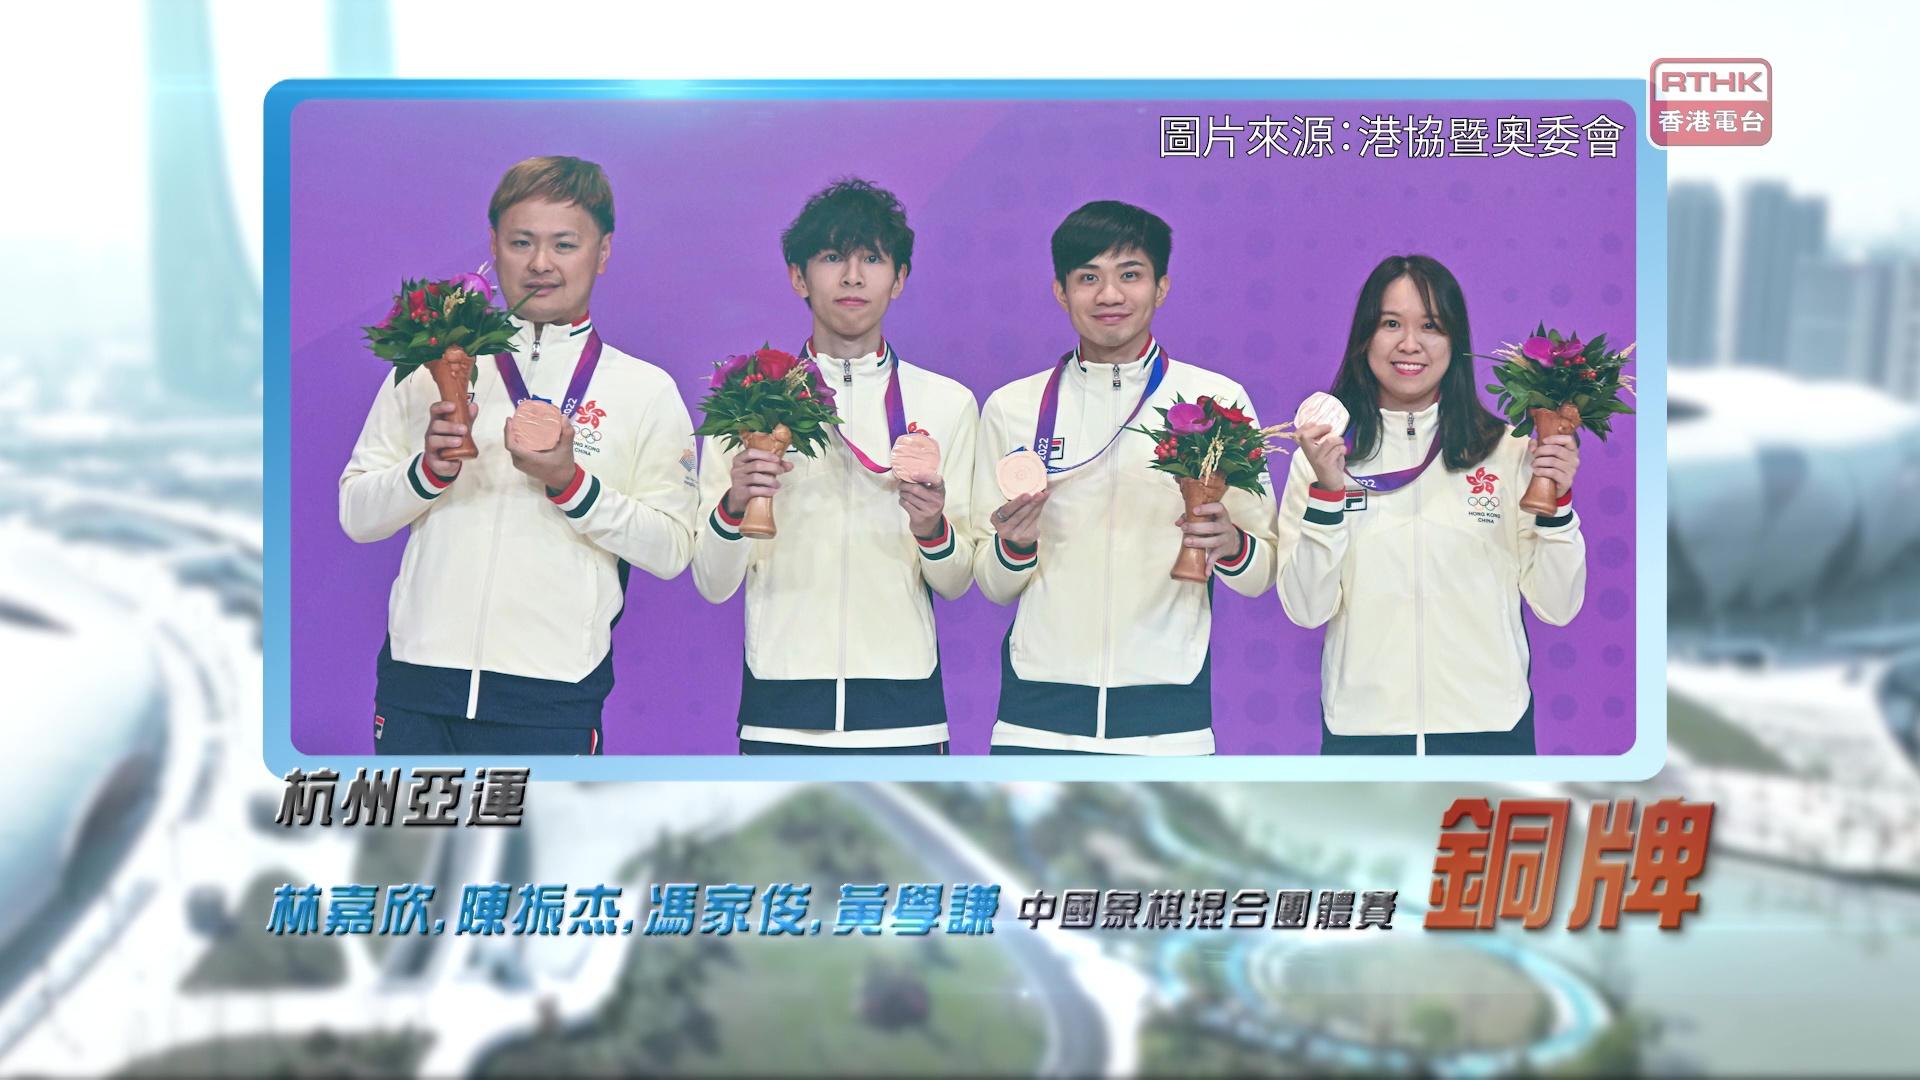 恭喜港隊在杭州亞運中國象棋混合團體賽取得銅牌